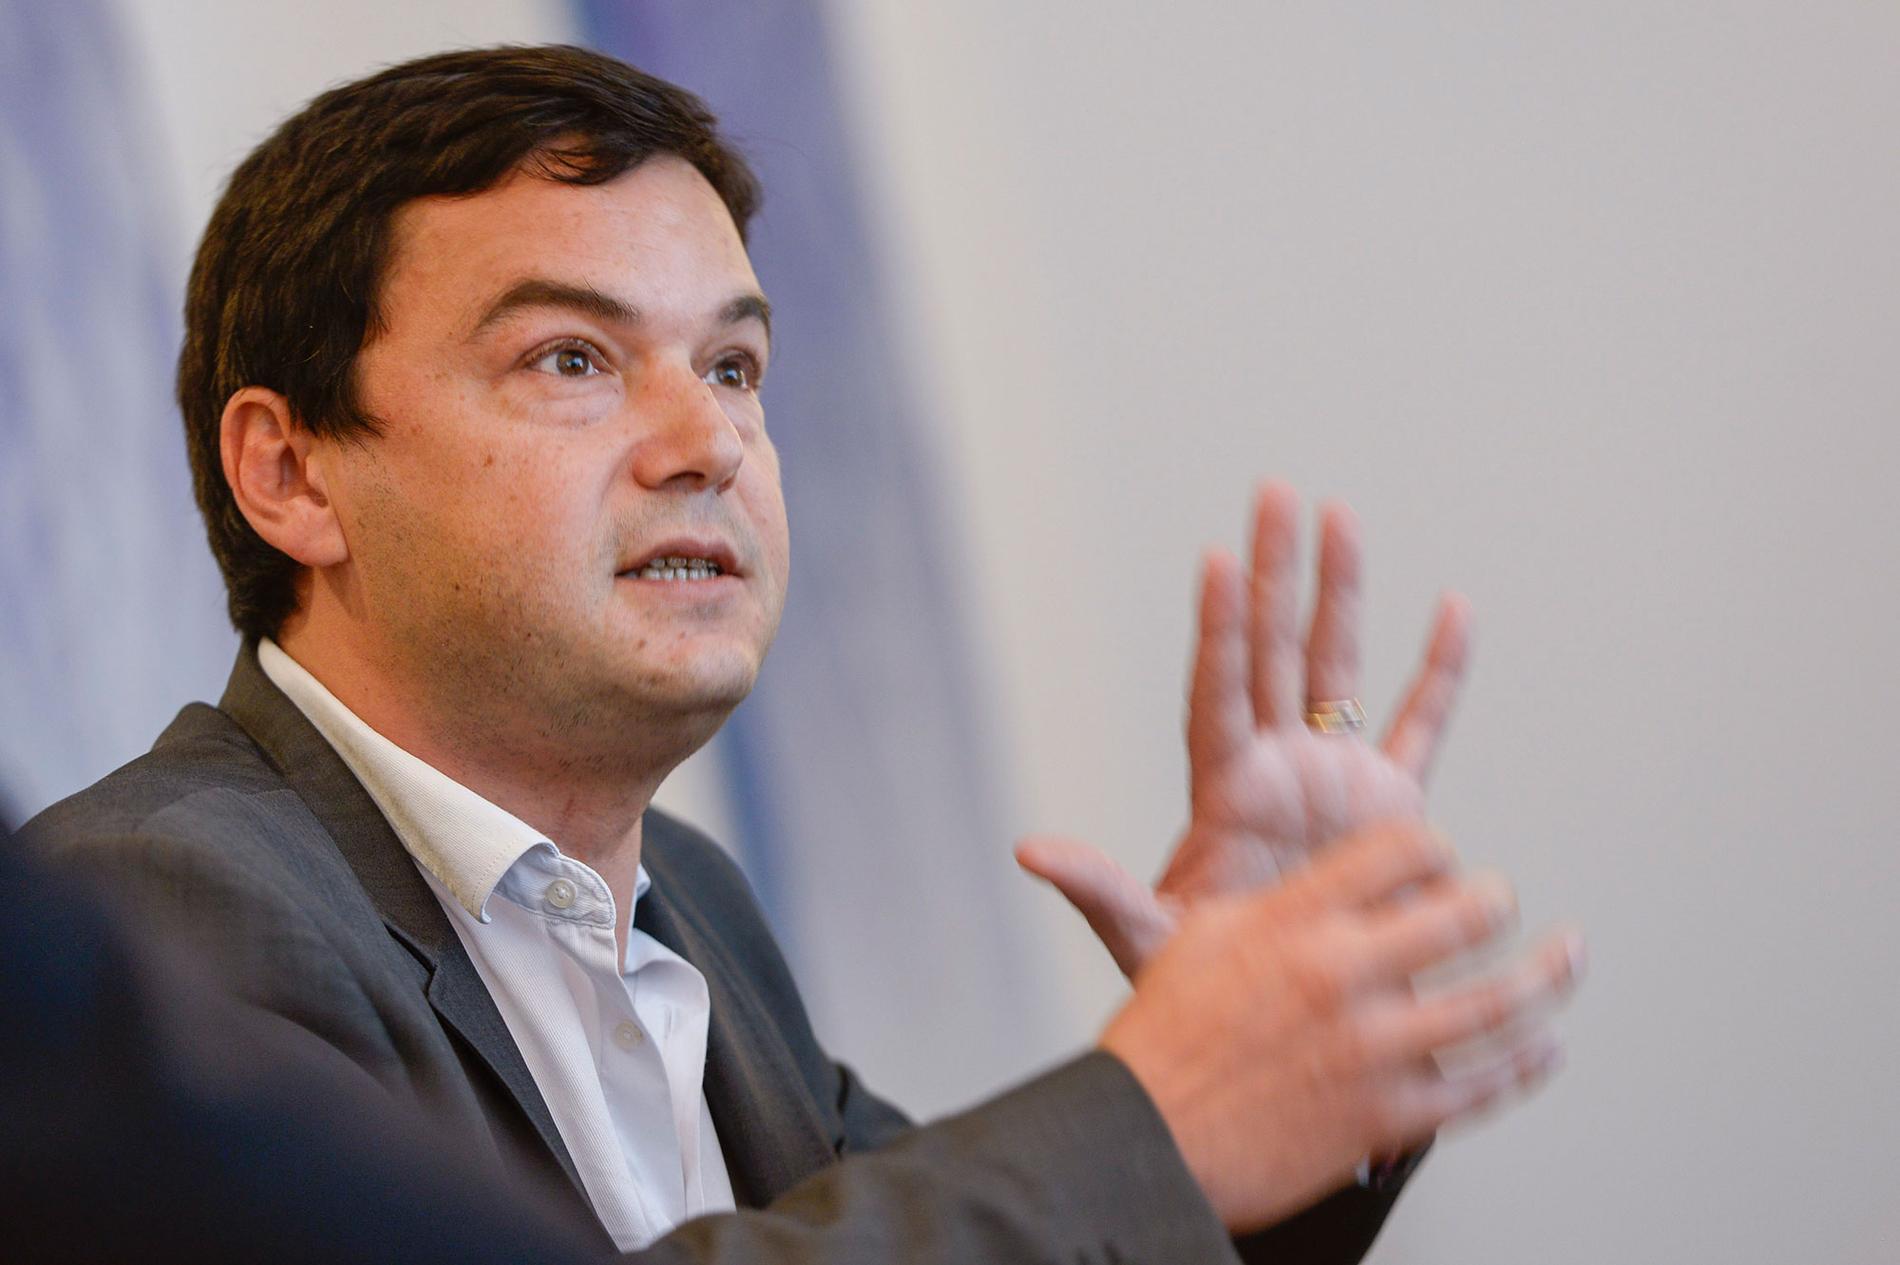 Thomas Piketty, fransk ekonom som specialiserat sig på studier i ekonomisk ojämlikhet i förmögenhets- och inkomstfördelning. Författare till boken ”Kapitalet i 21:a århundradet”, och en av de 300 ekonomerna som skrivit under det öppna brevet till världsledarna.